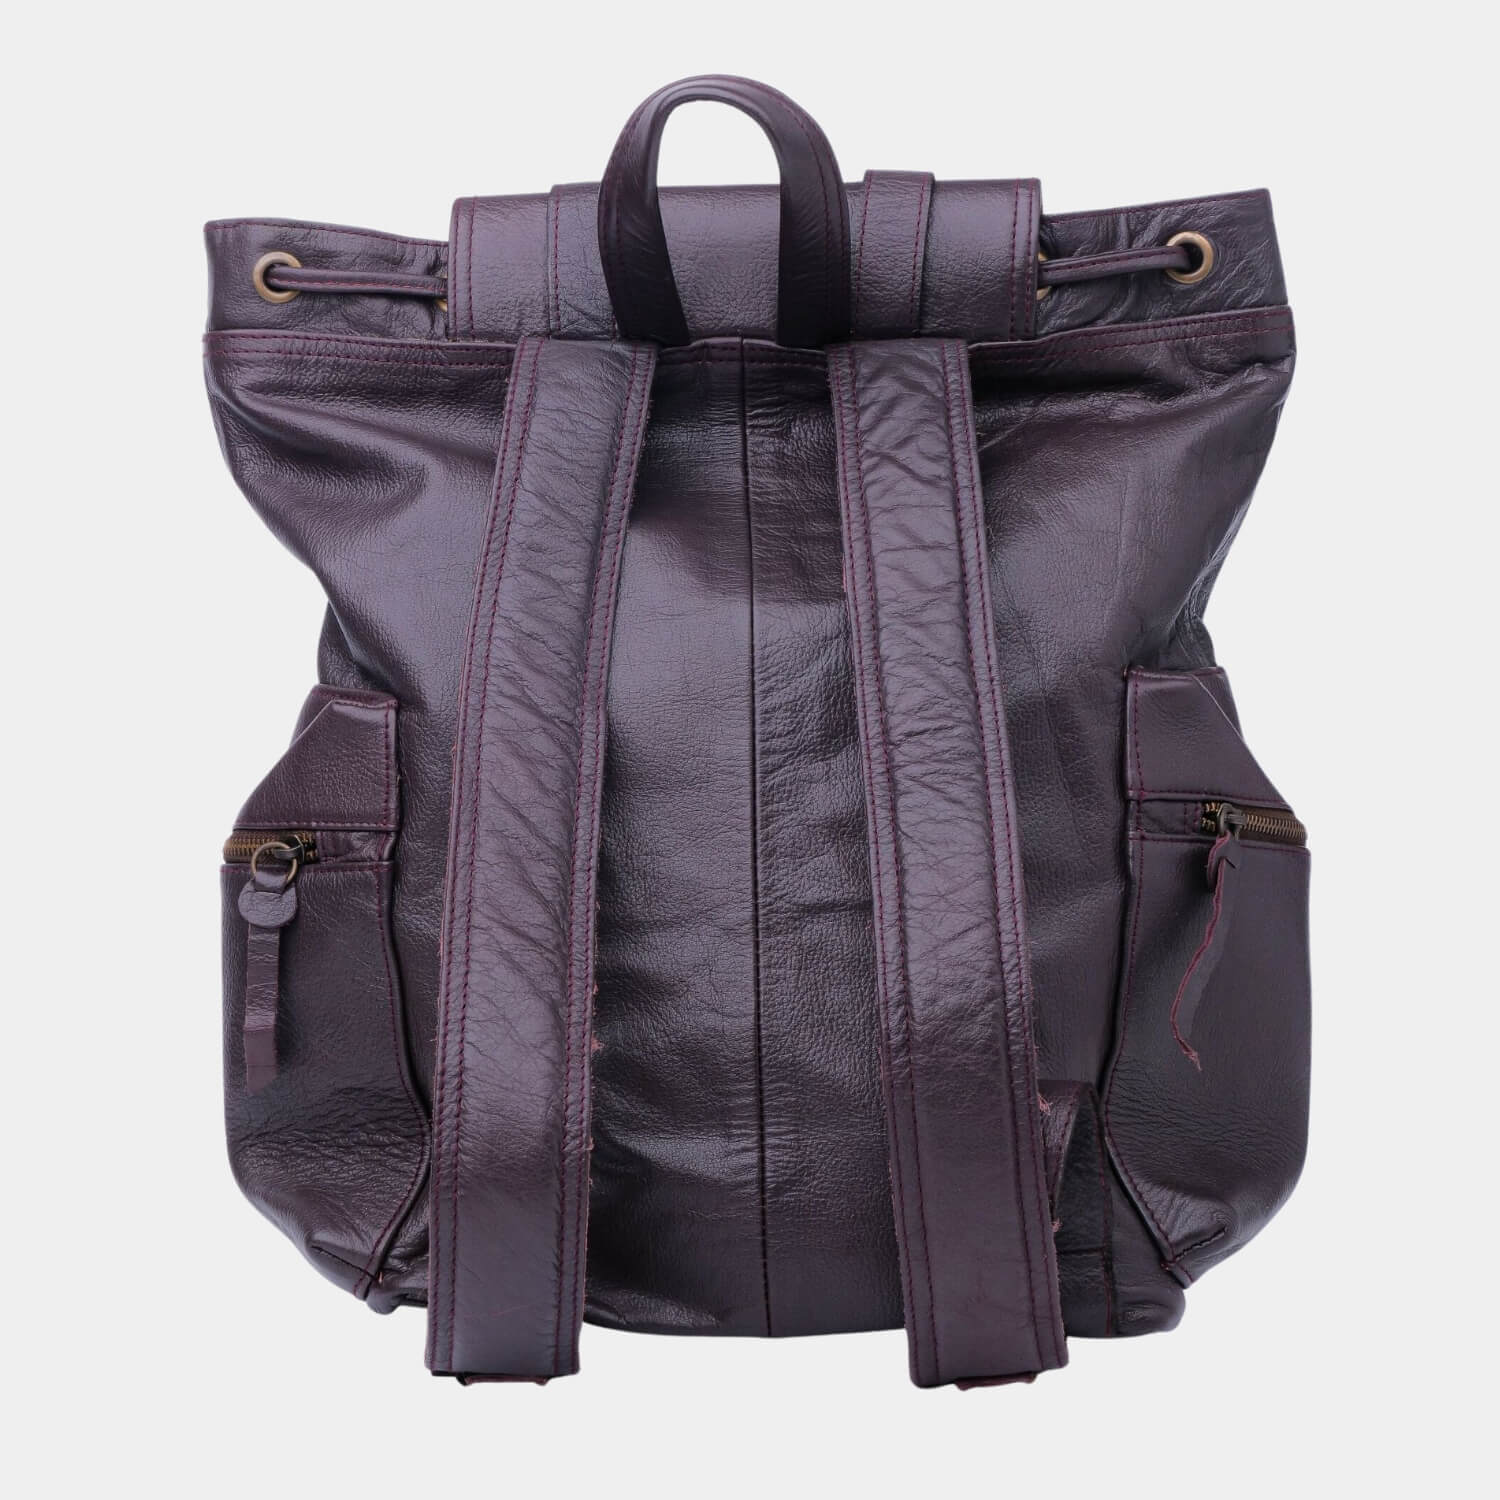 Chestnut Leather Backpack Travel Laptop Office Bag Back